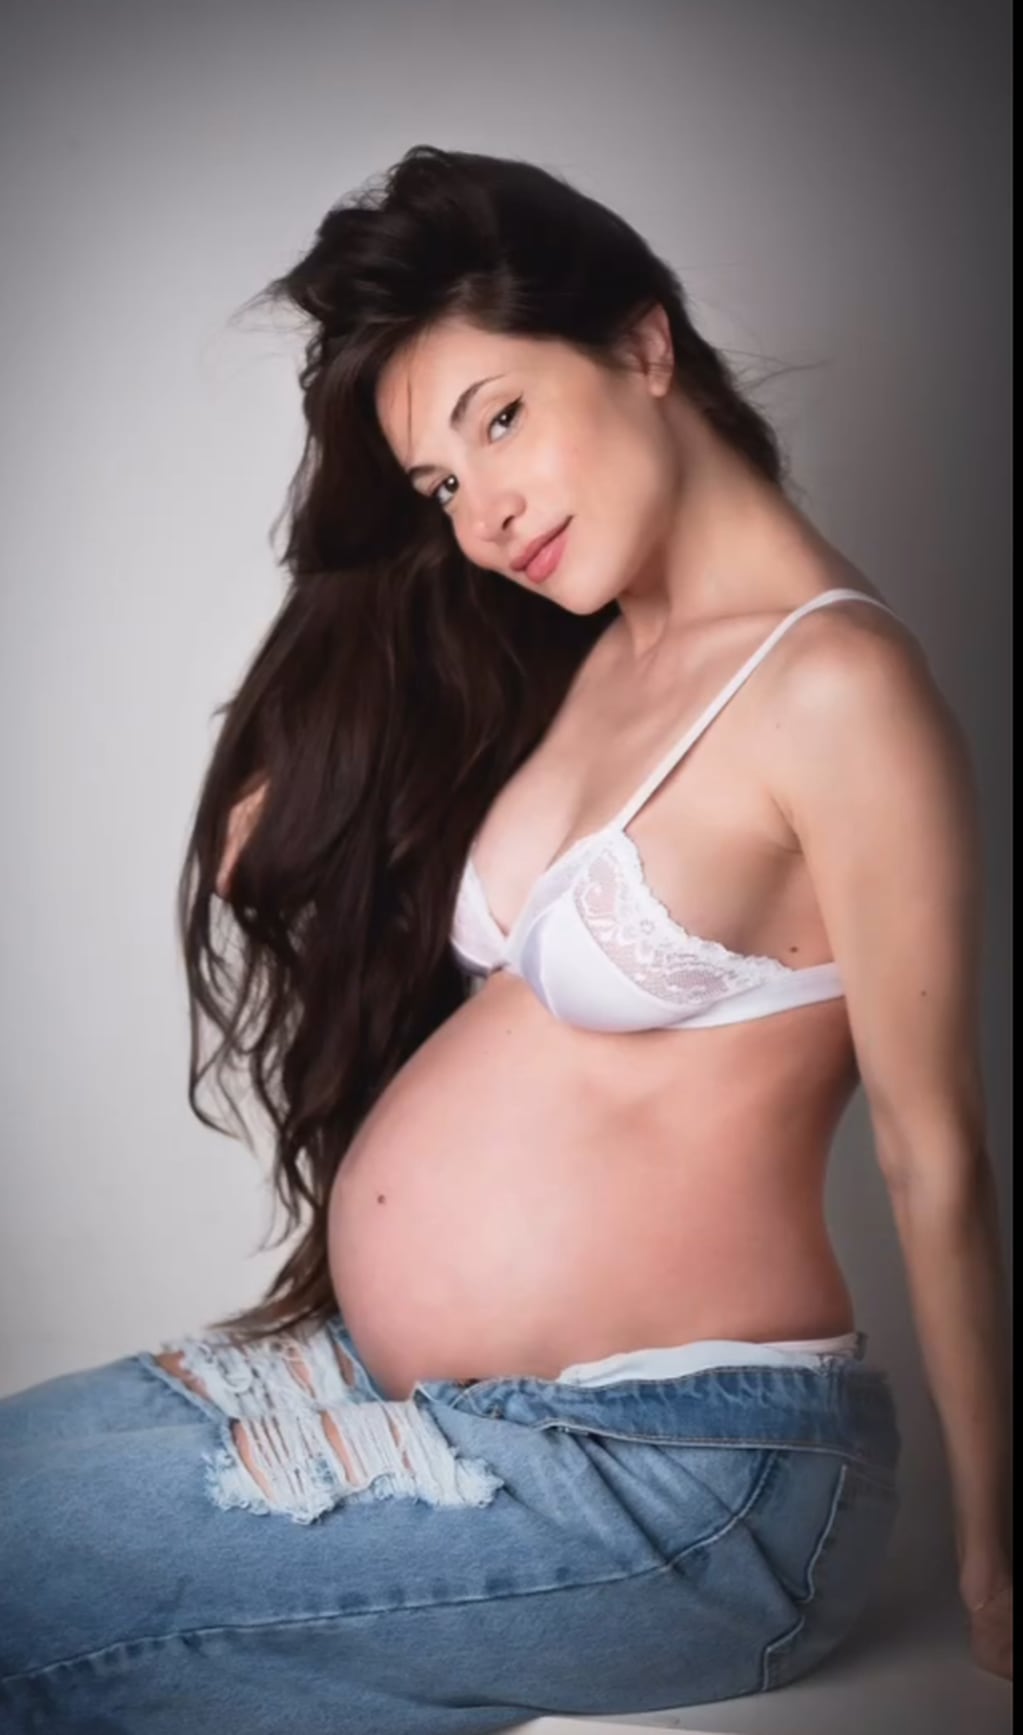 Magui Bravi posó en topless con 35 semanas de embarazo: "Mi mejor momento"